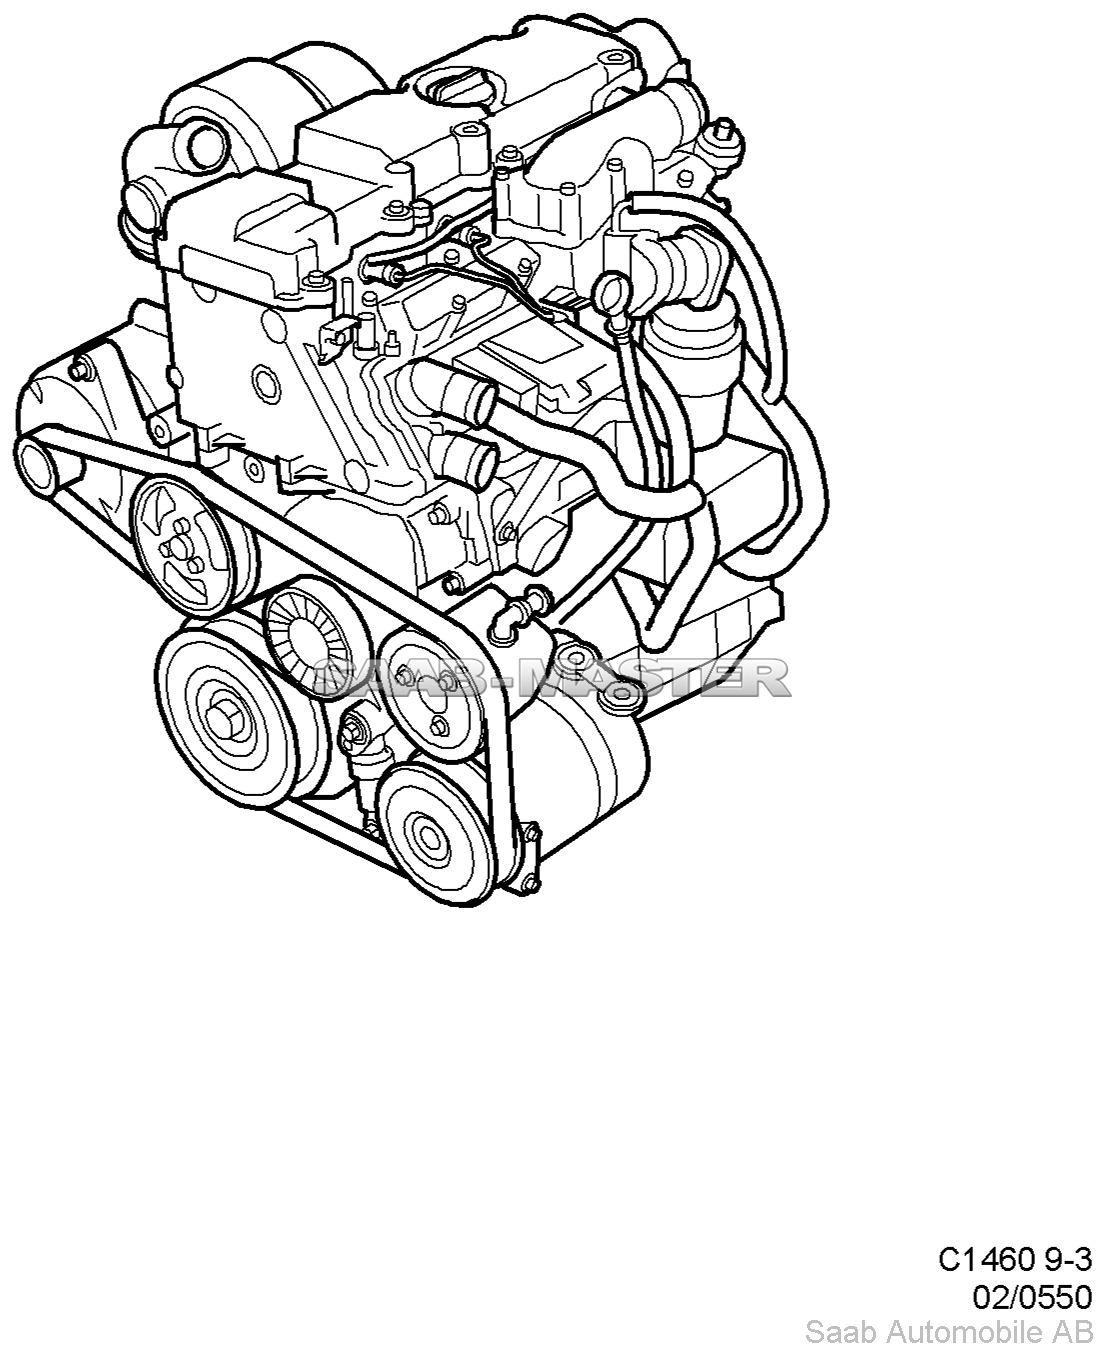 Базовый двигатель - Двигатель, мотор